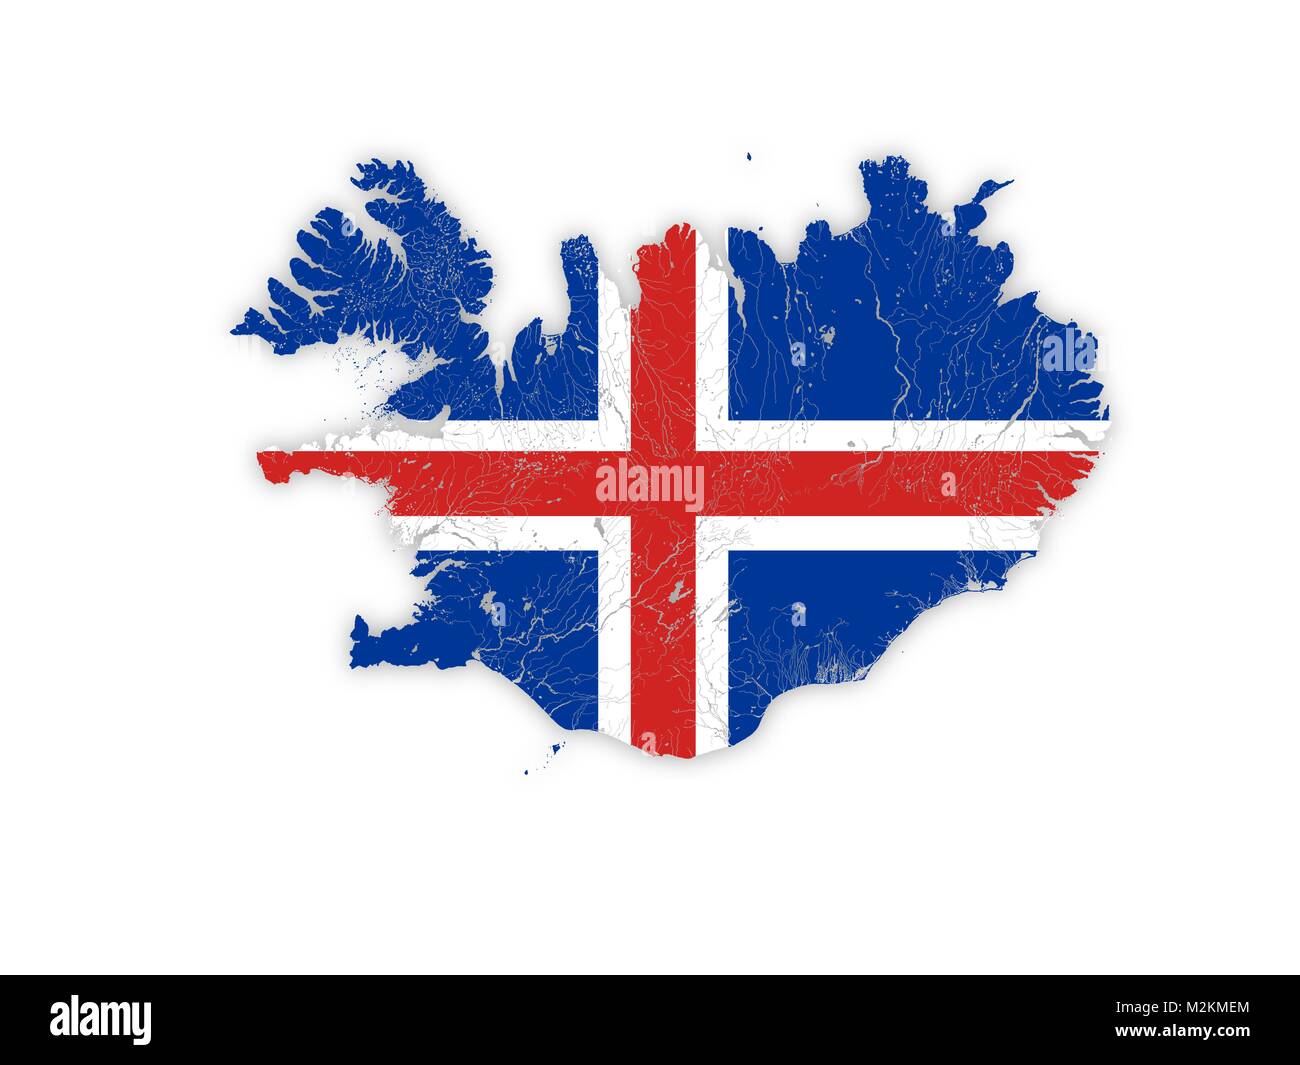 Karte von Island mit Flüssen und Seen in den Farben der Nationalflaggen. Bitte sehen Sie sich meine anderen Bilder von kartographischen Serie Stock Vektor